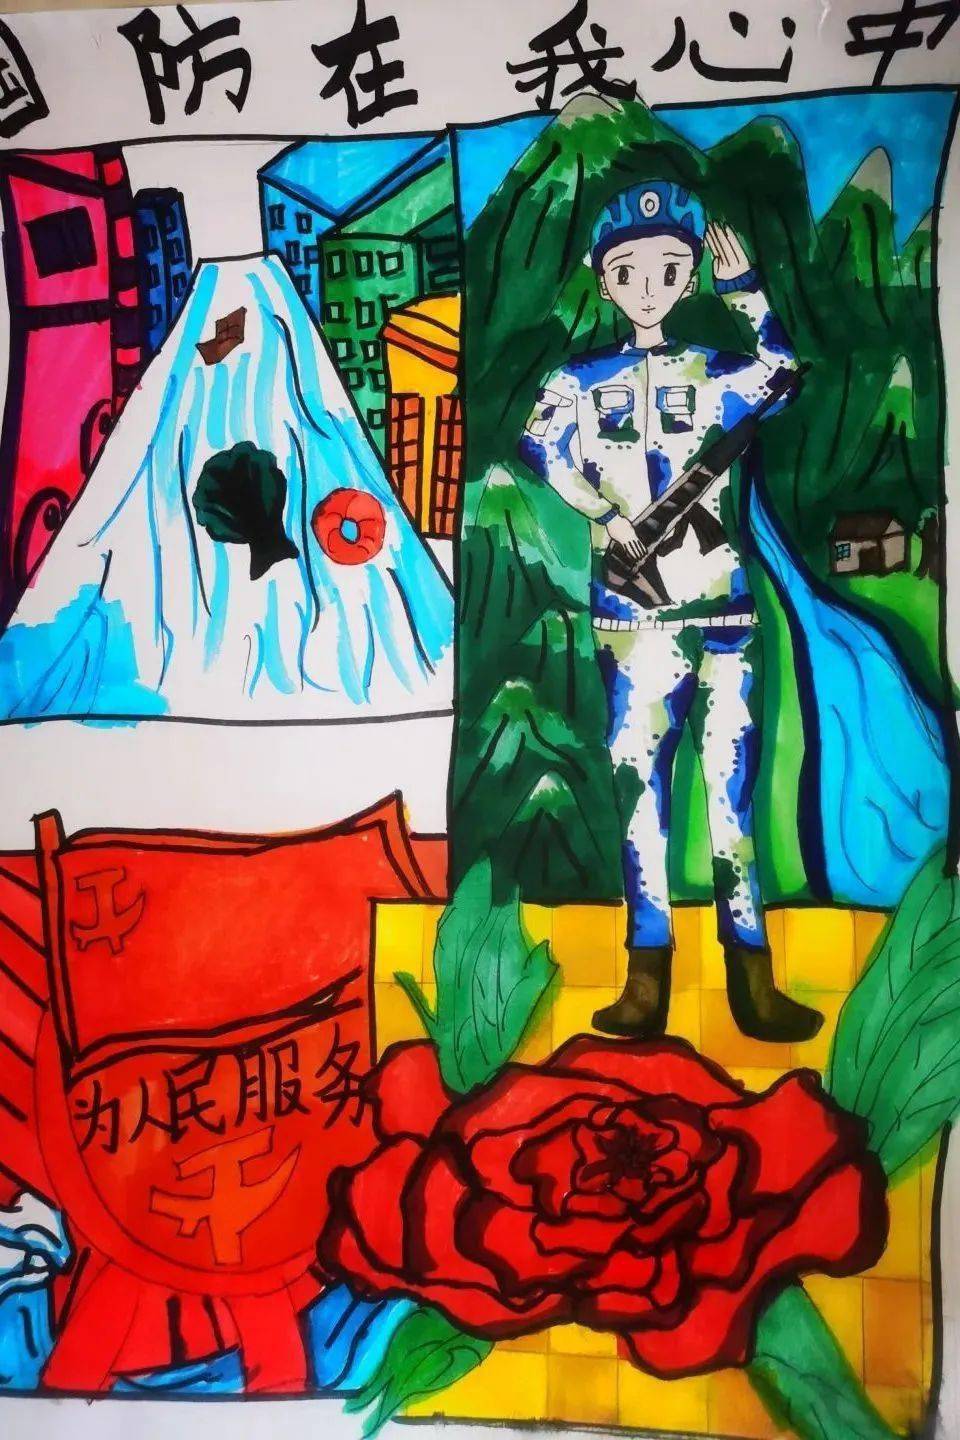 爱我国防 强国有我济南市章丘区东山小学开展演讲,绘画比赛活动